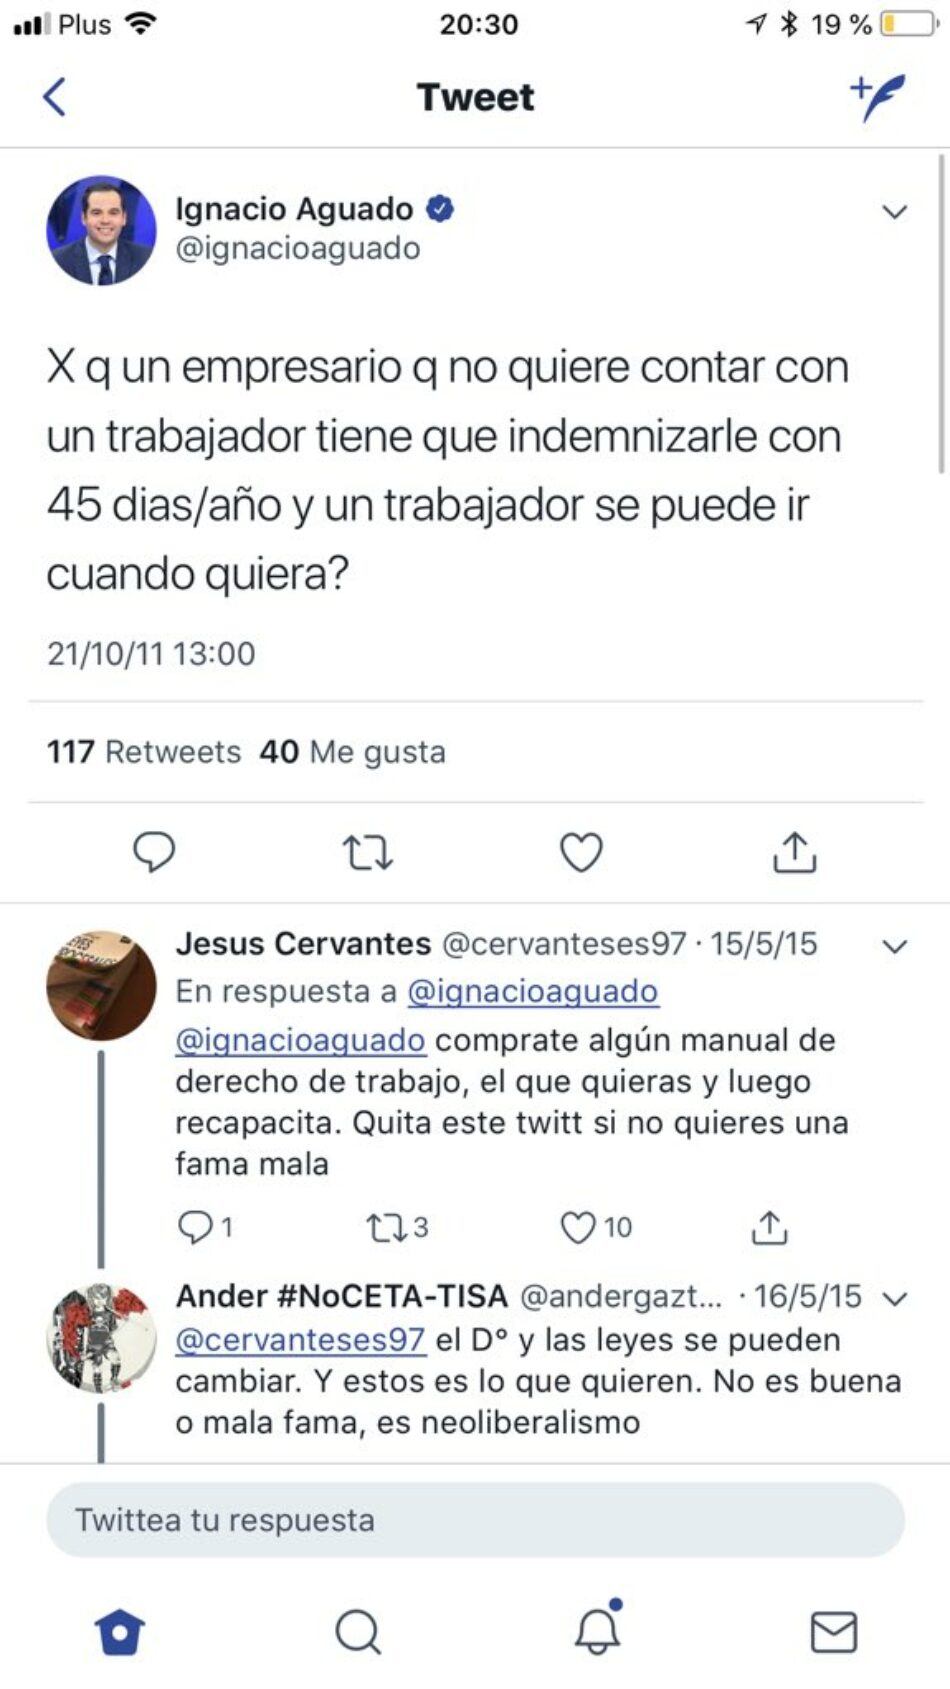 El candidato de Ciudadanos a la Comunidad de Madrid borra un tuit en el que se quejaba de que los empresarios tengan que indemnizar a los trabajadores por despido improcedente con 45 días/año